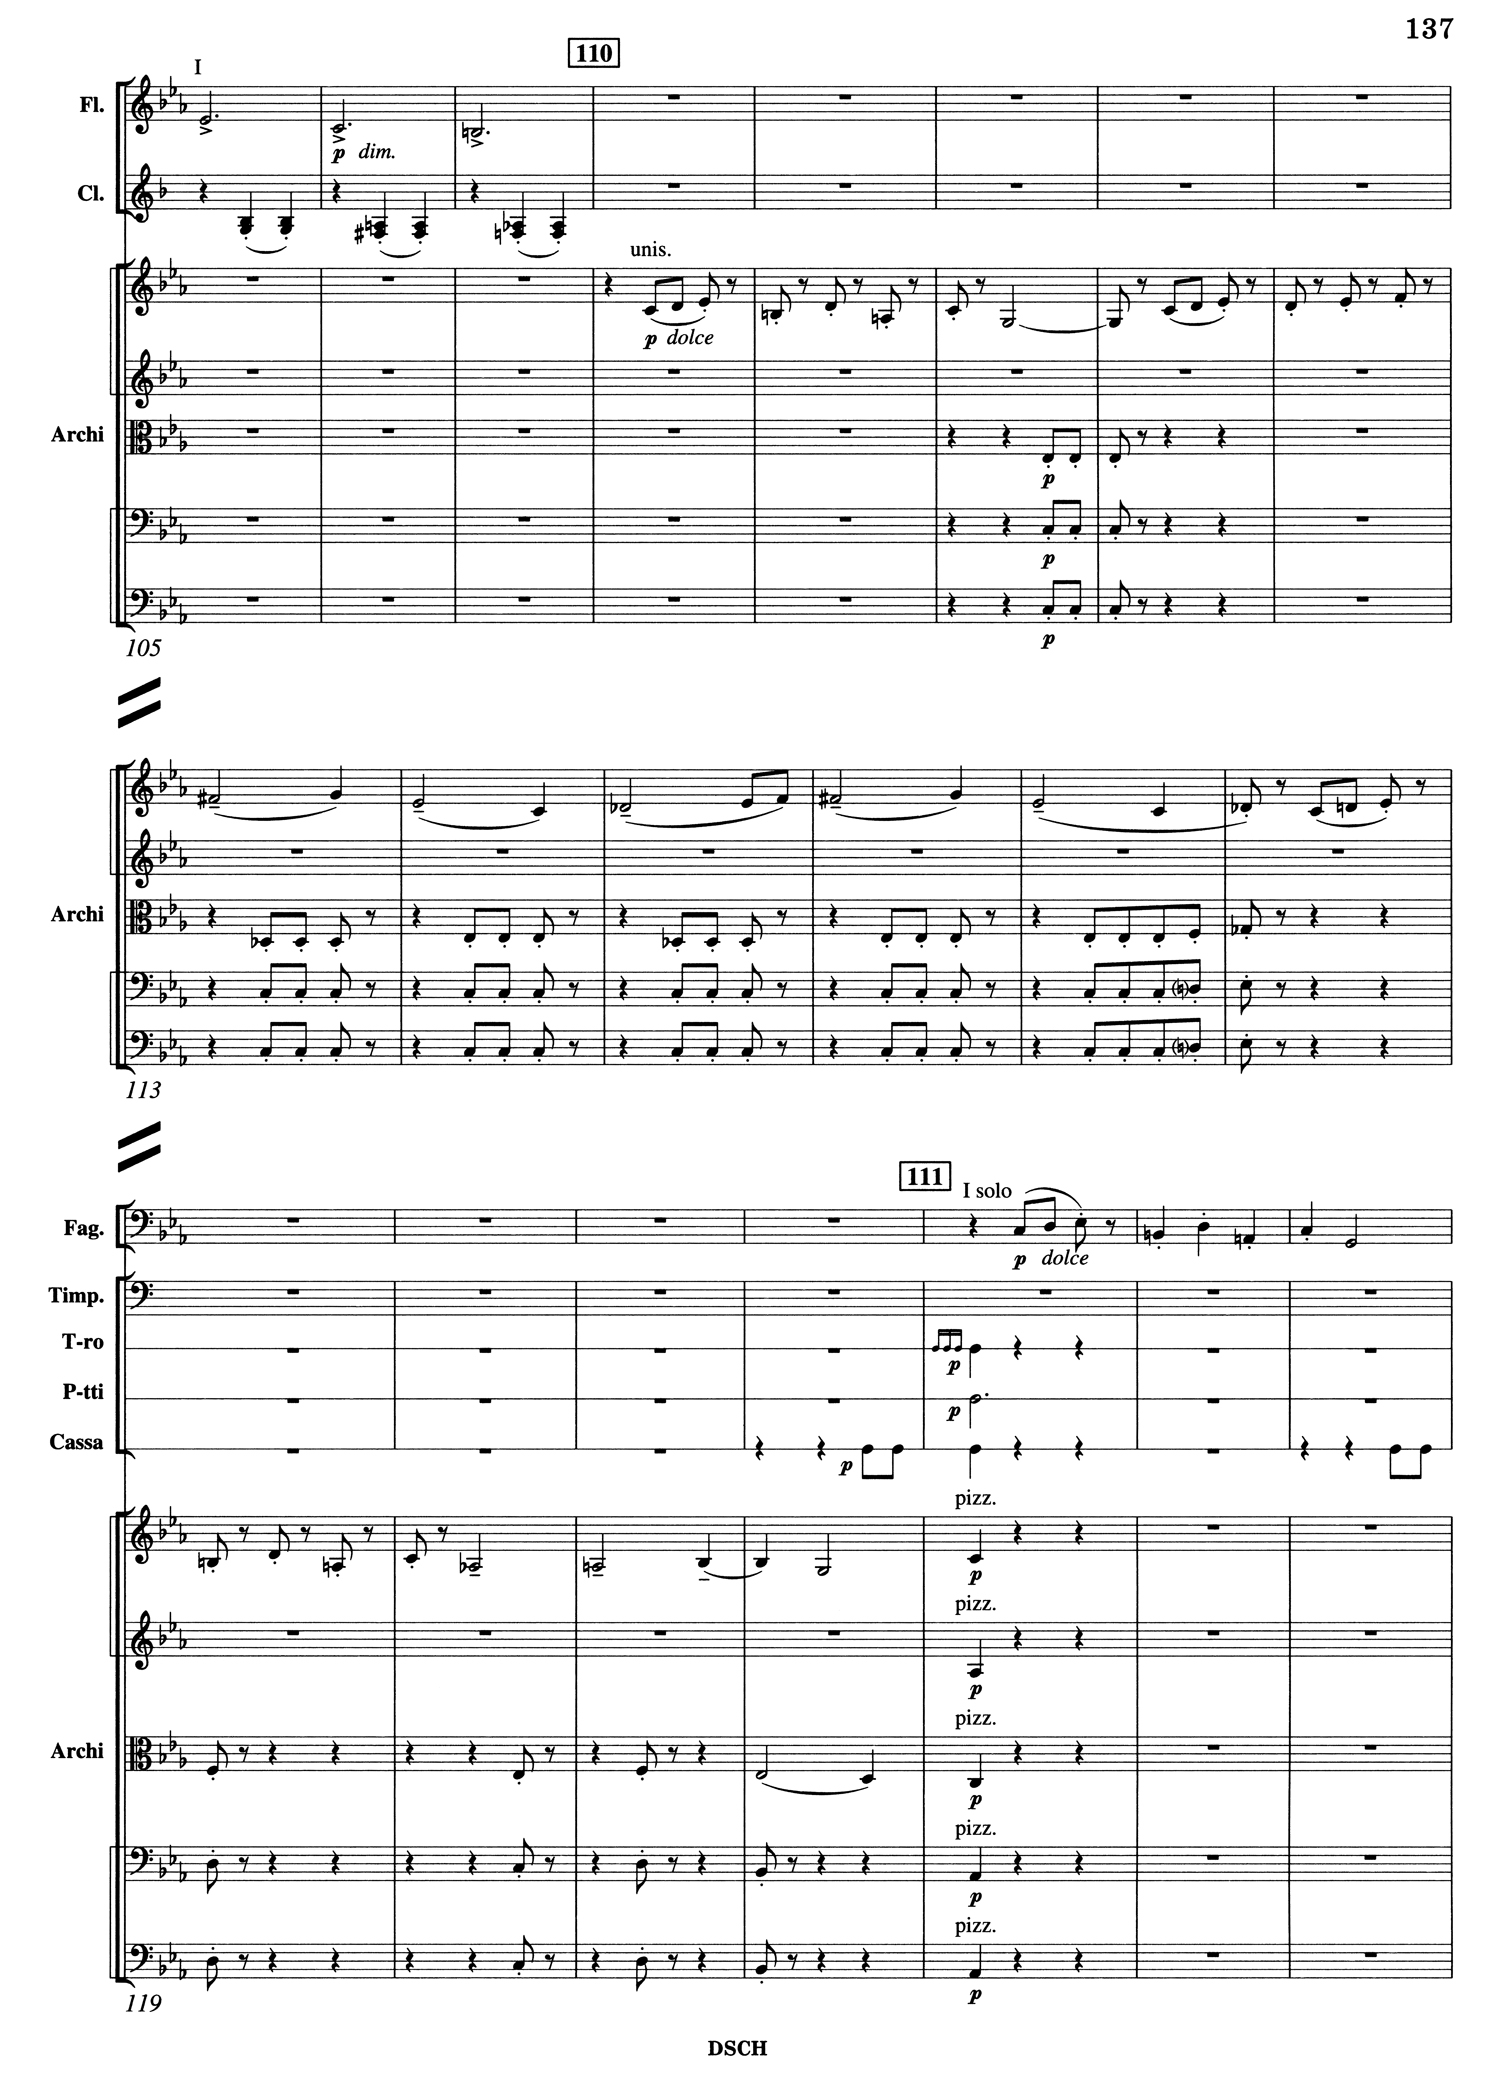 Shostakovich_10_Mvt_3_Score_1.jpg